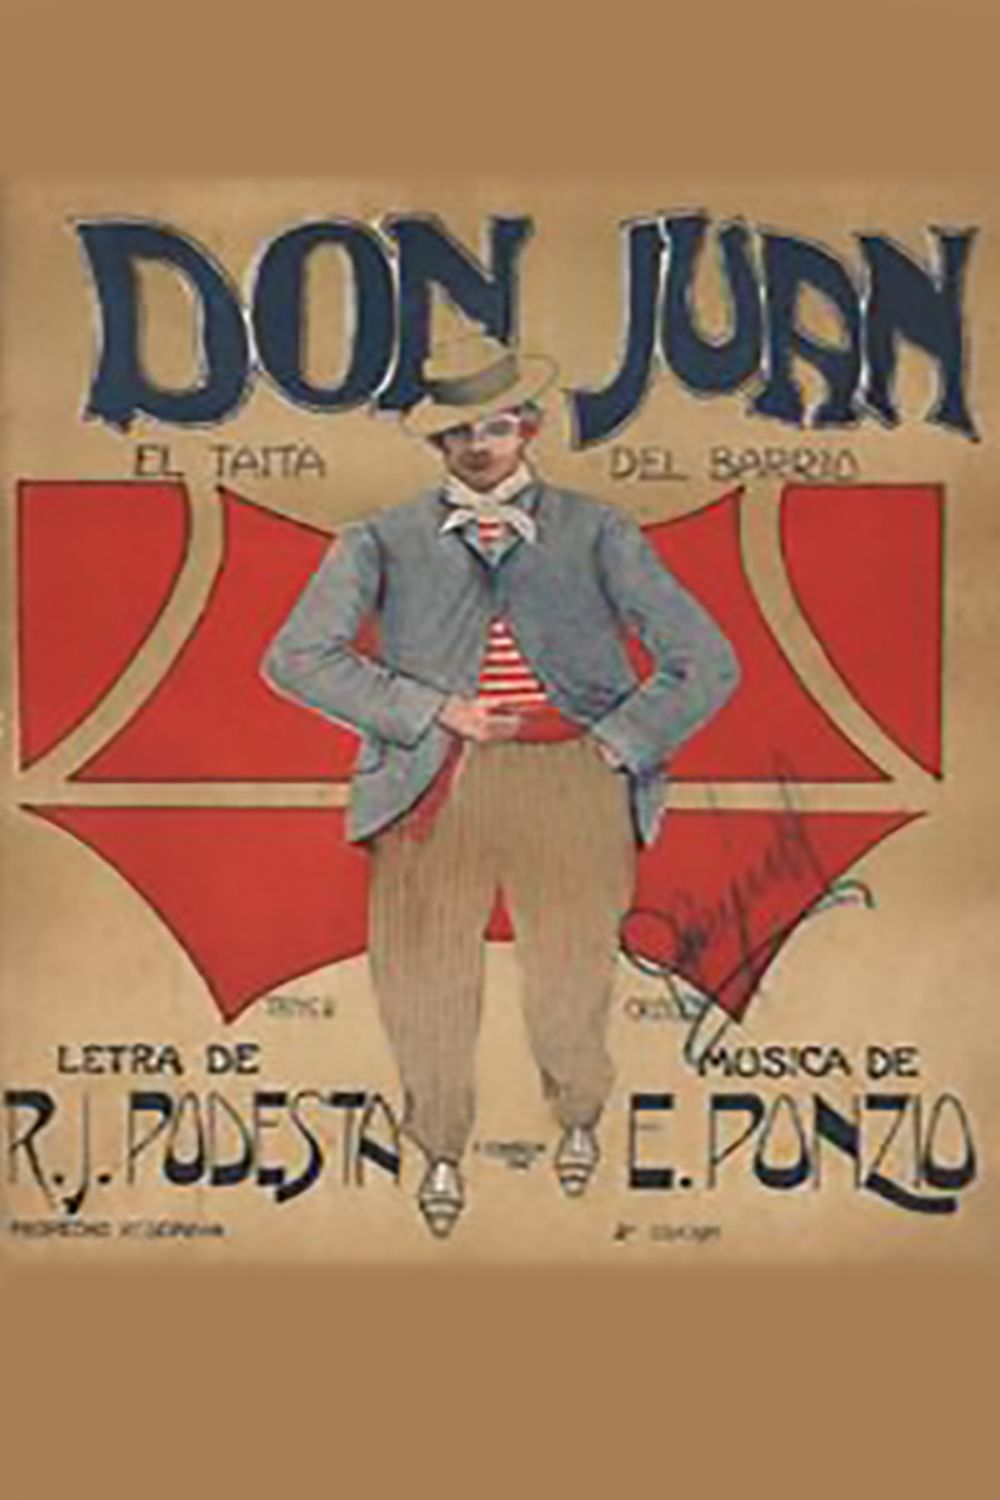 Don Juan, tapa de la partitura musical del Tango.